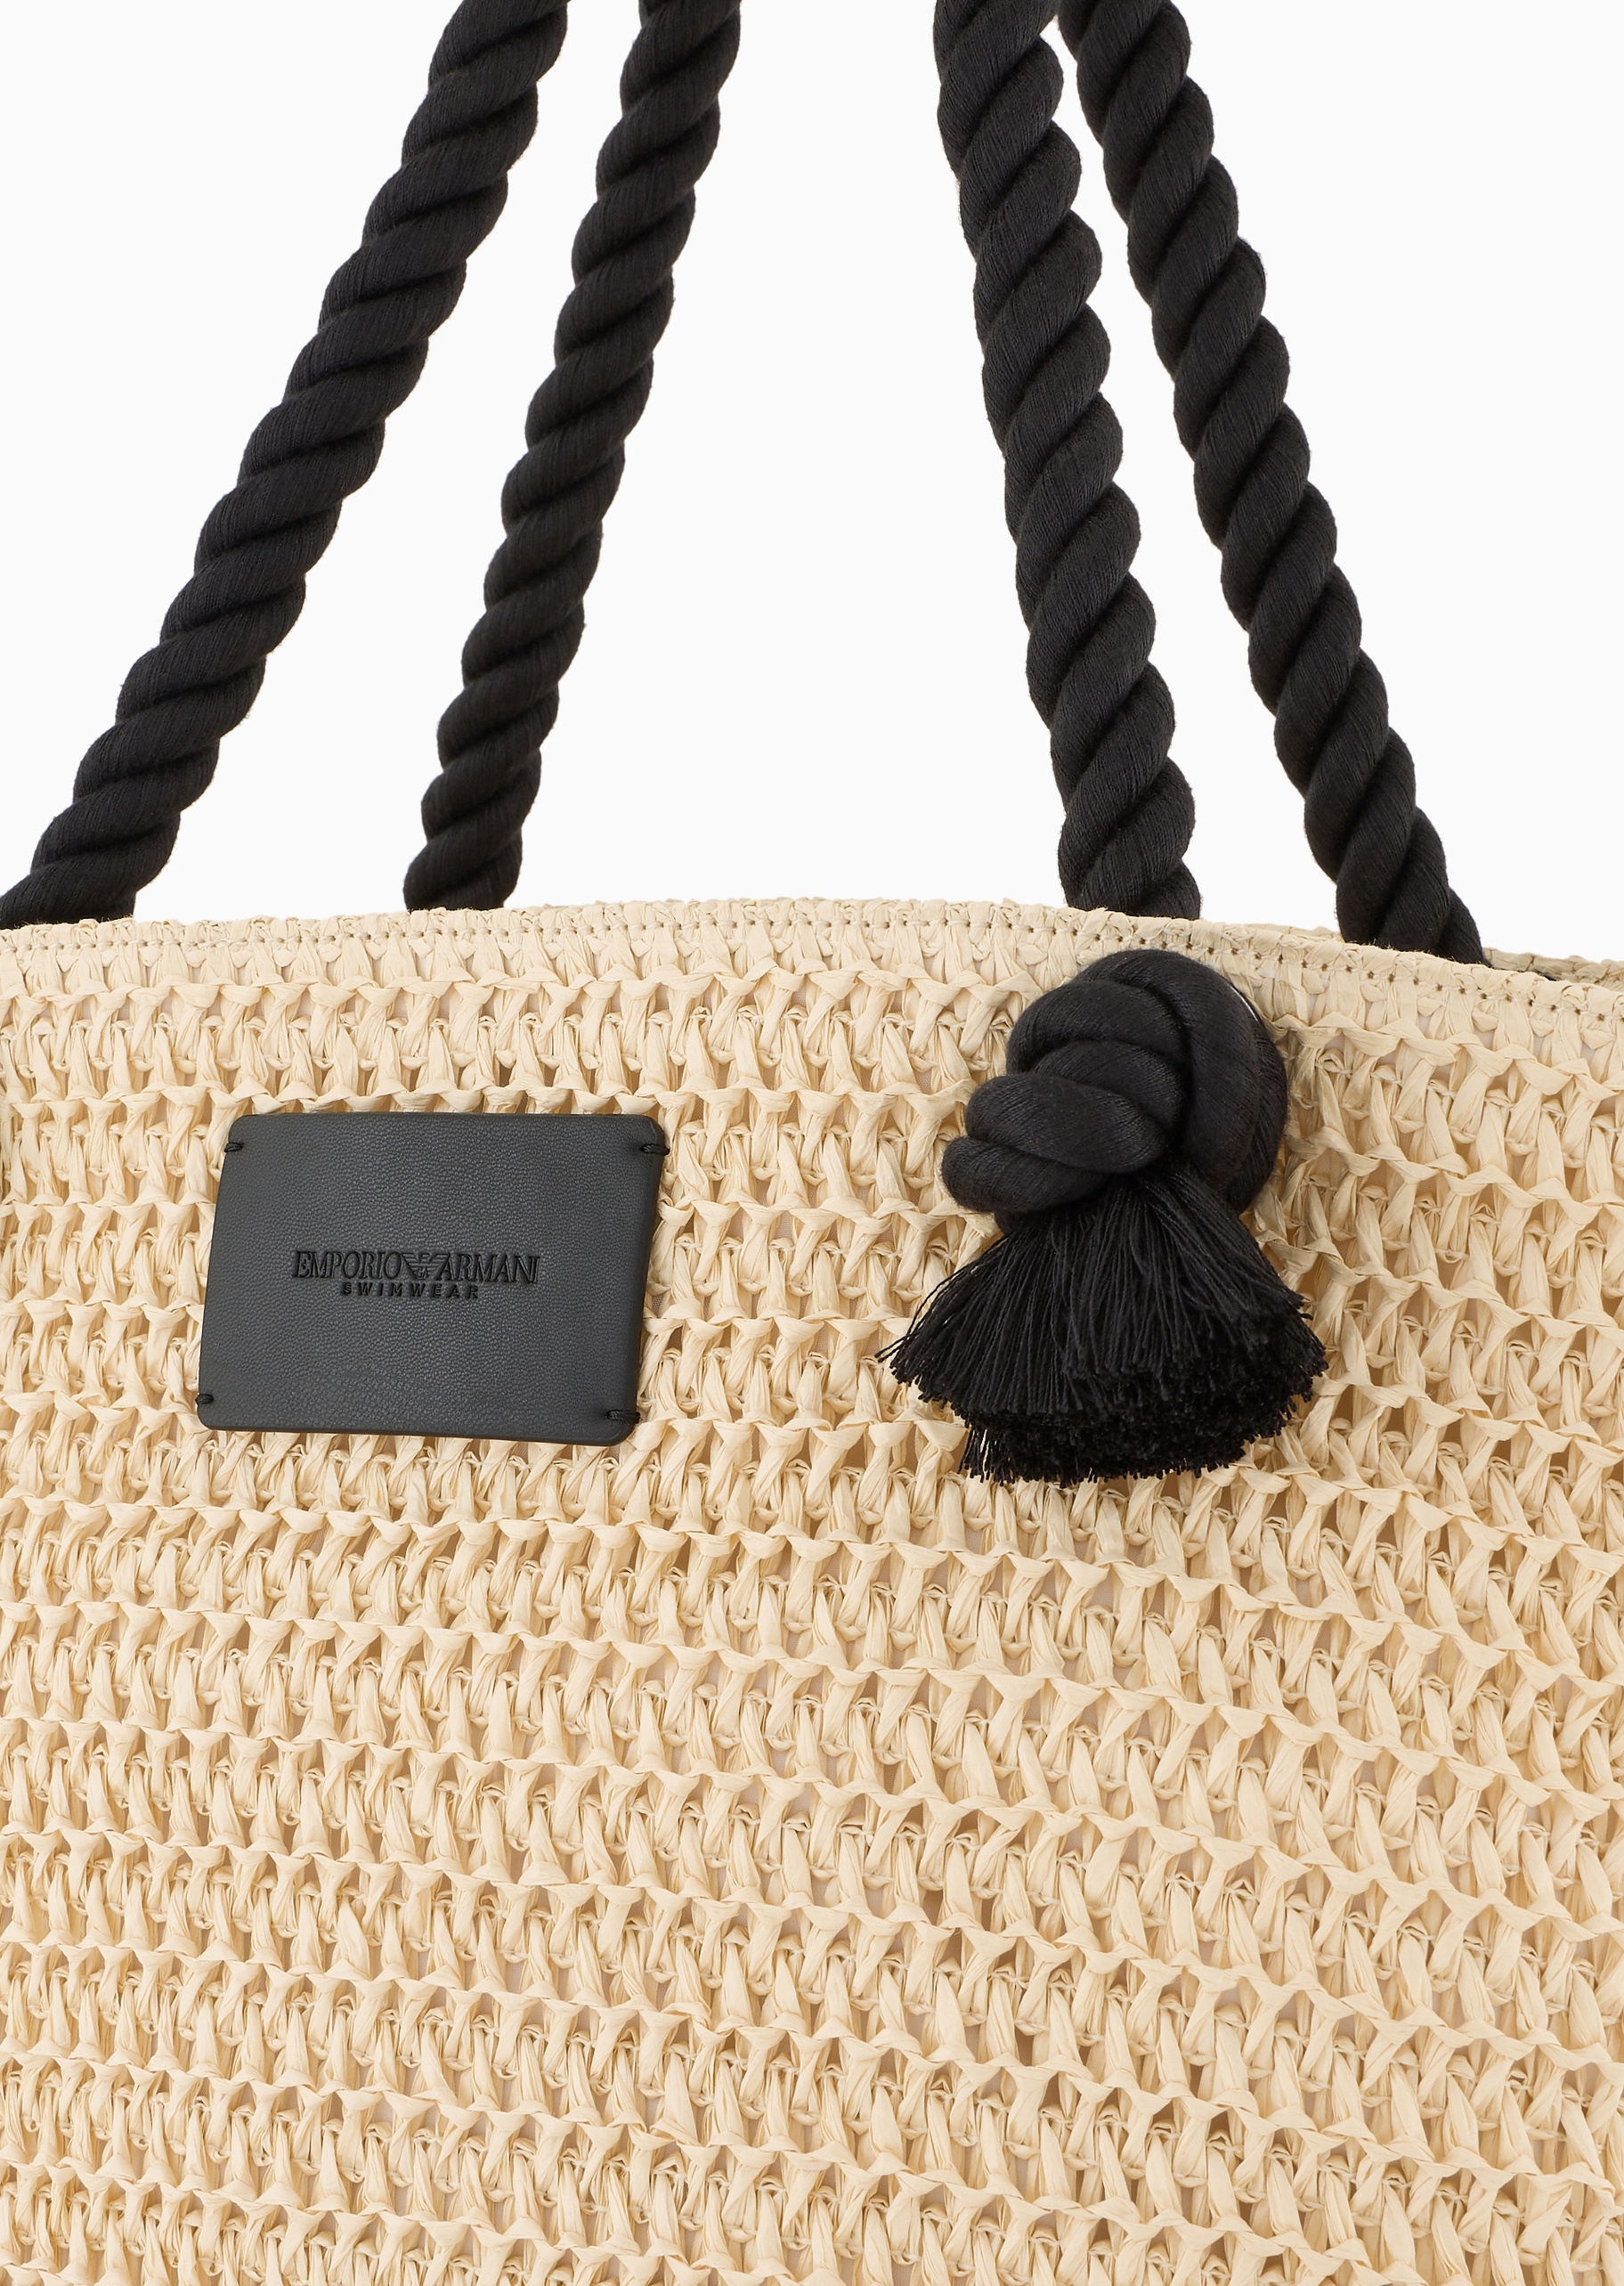 Emporio Armani 男女磁扣平扇形大容量编织单肩沙滩托特包